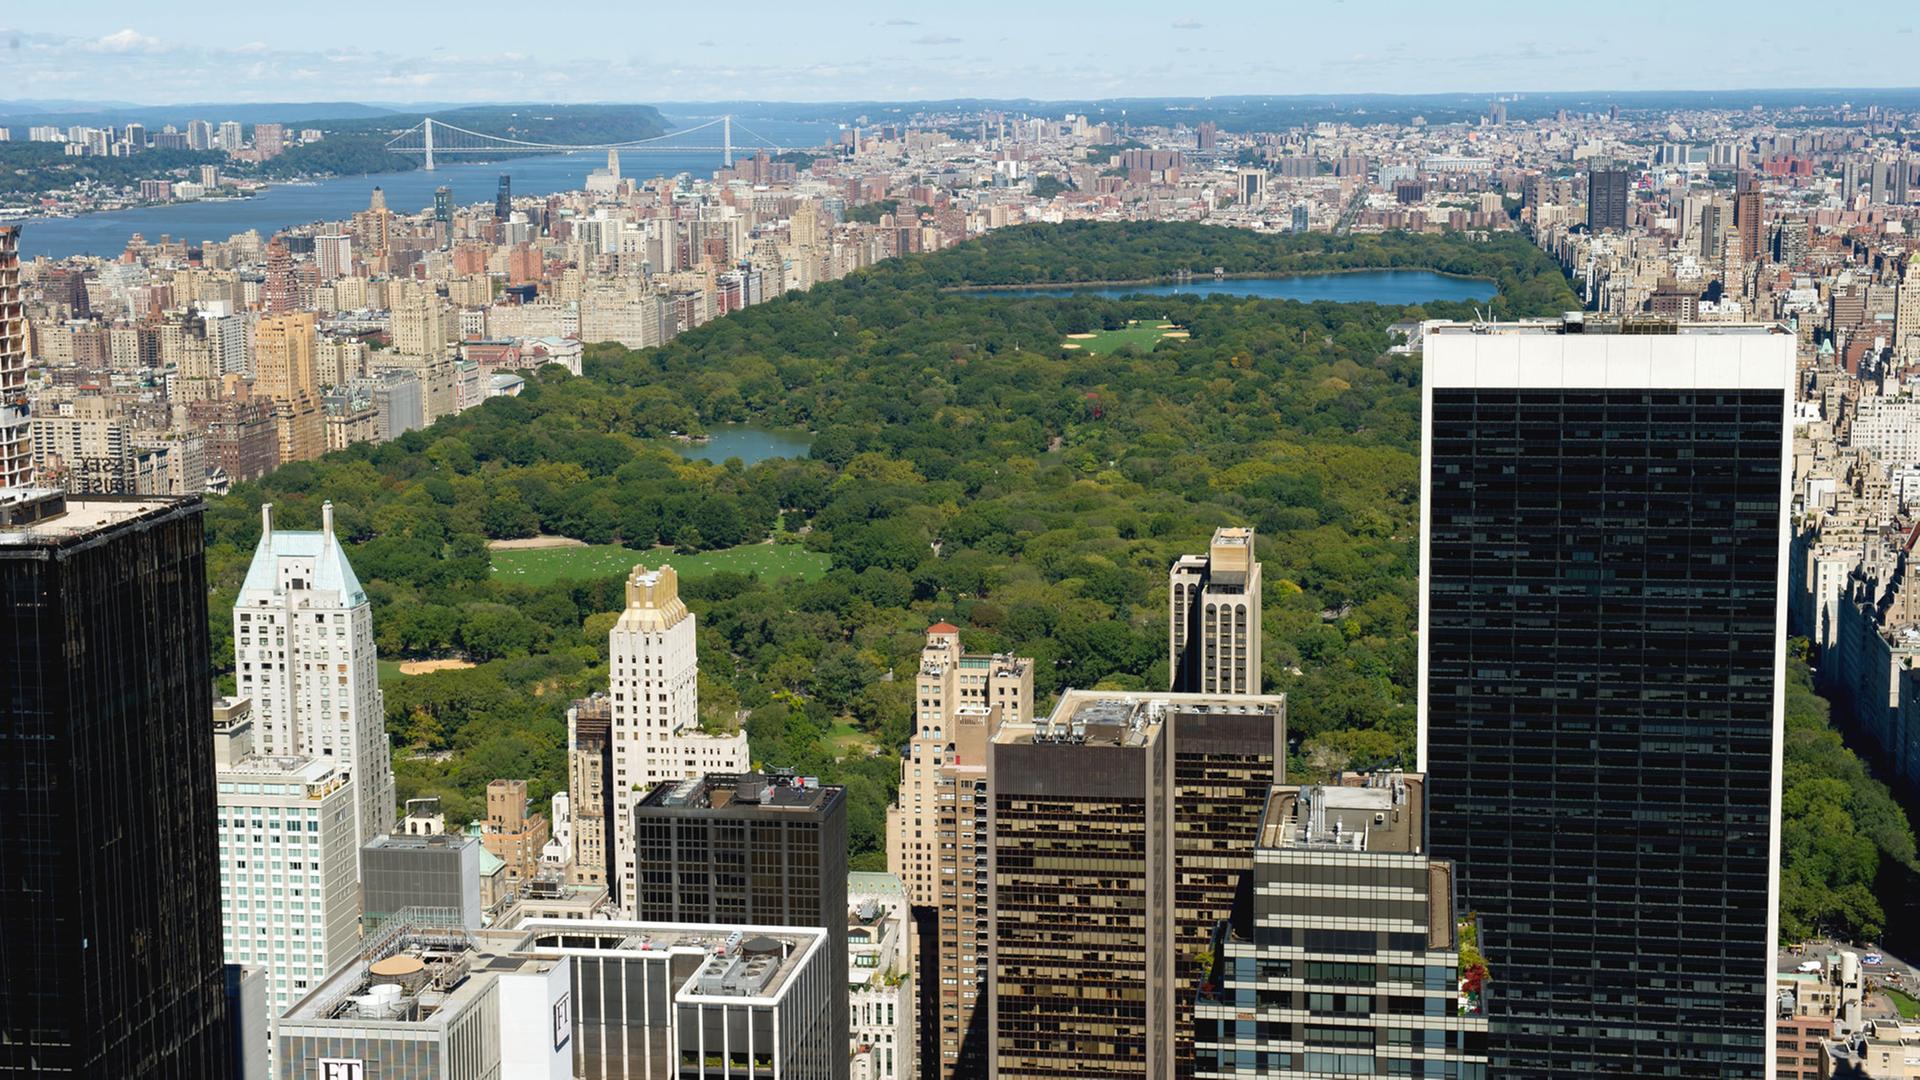 Blick von der Aussichtsplattform "Top of the Rock" auf dem Rockefeller Center in New York über den Central Park in Manhattan.